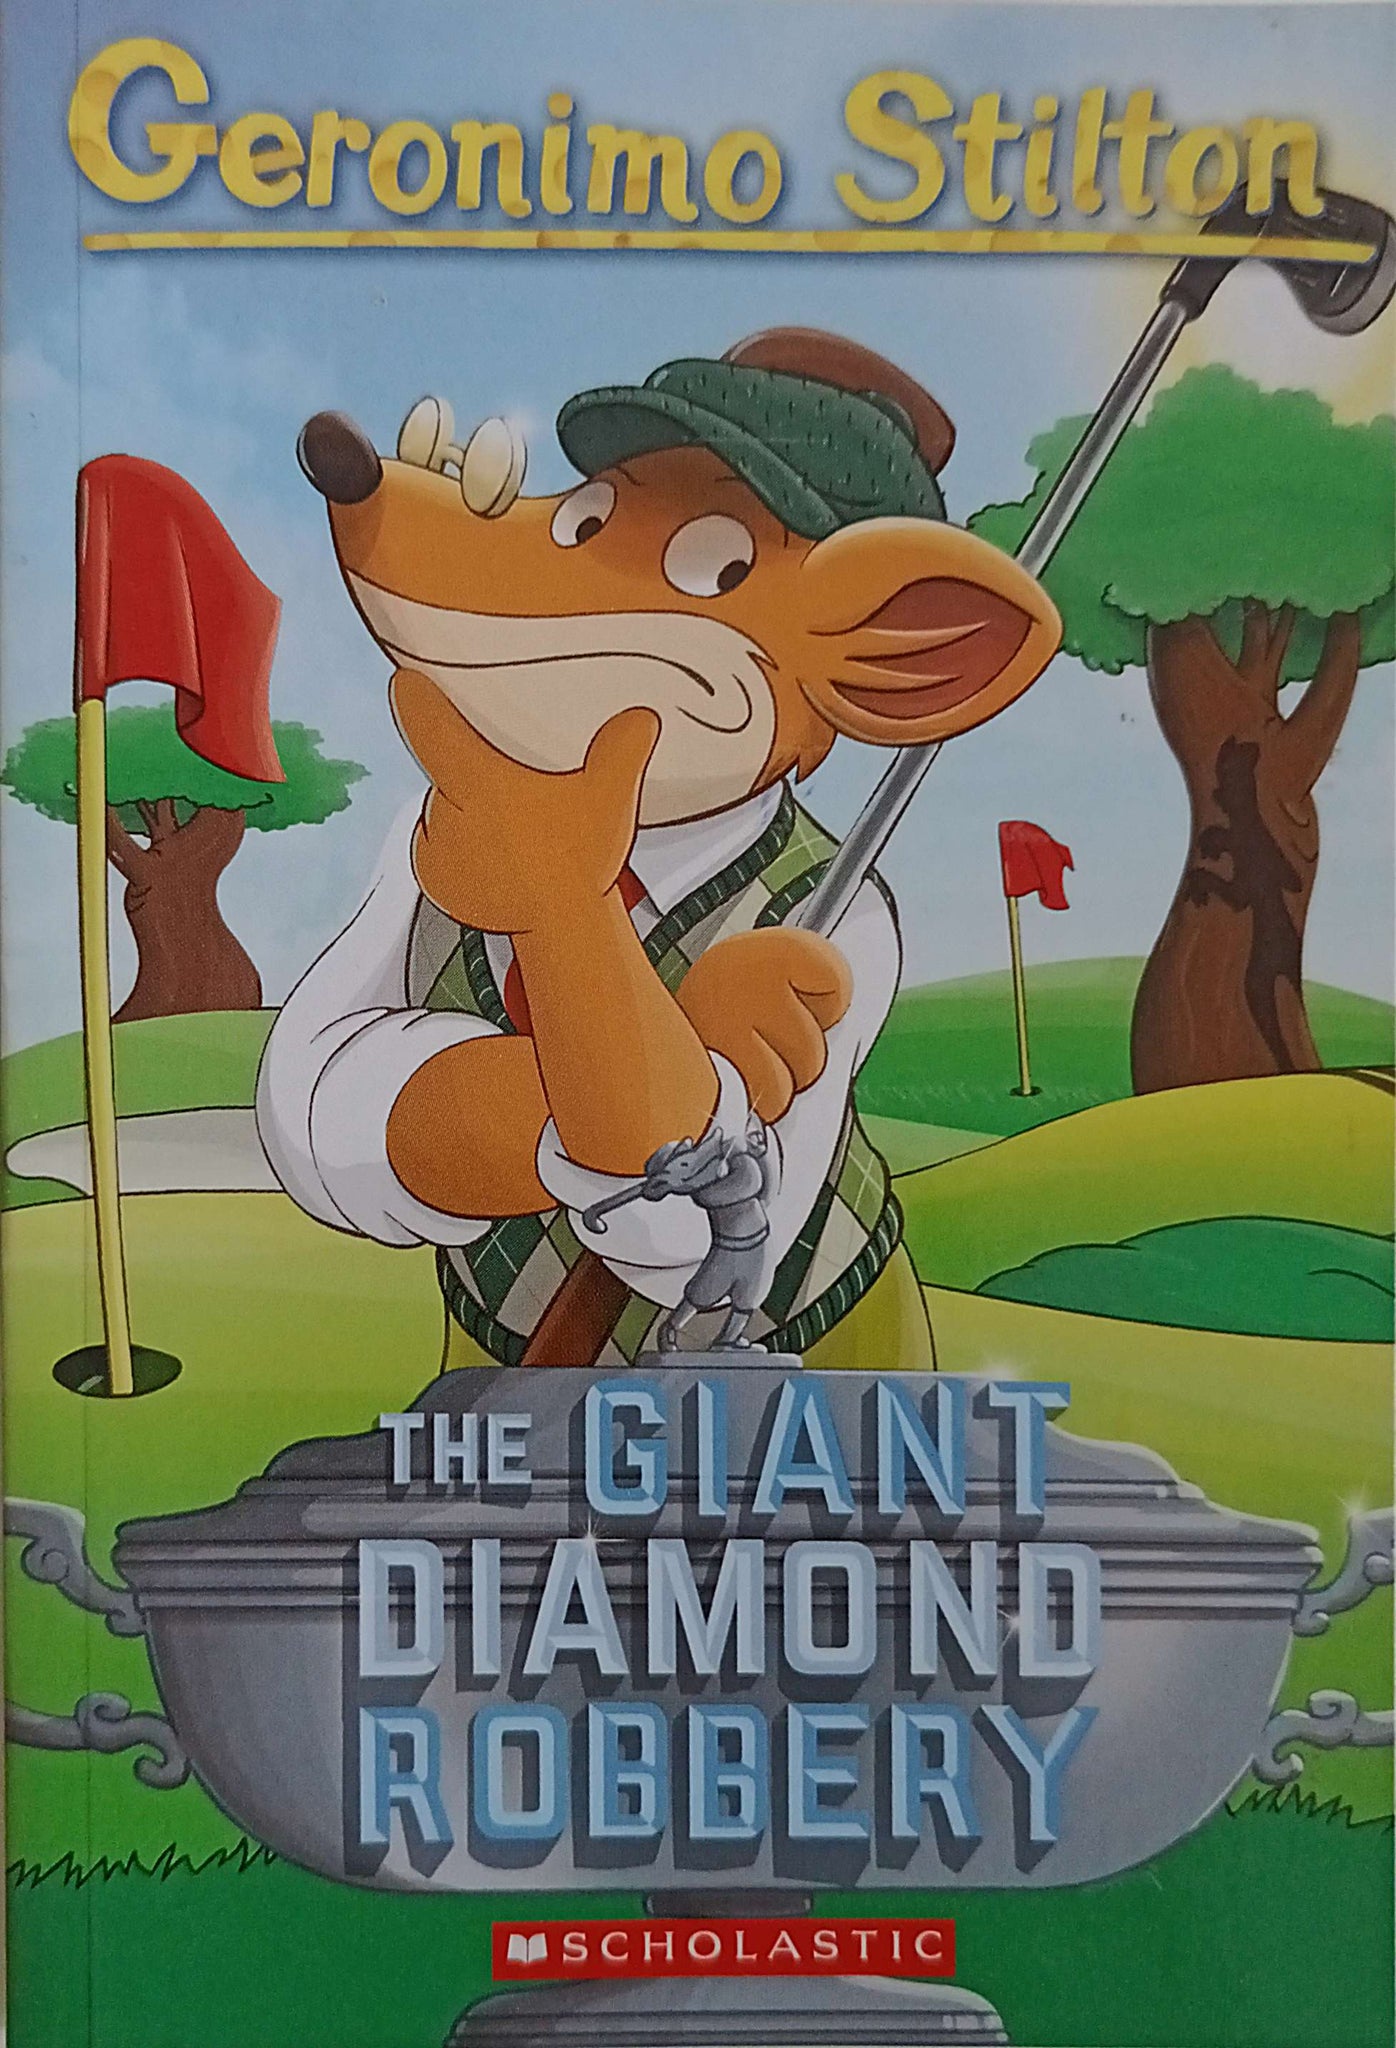 Geronimo Stilton The Giant Diamond Robbery